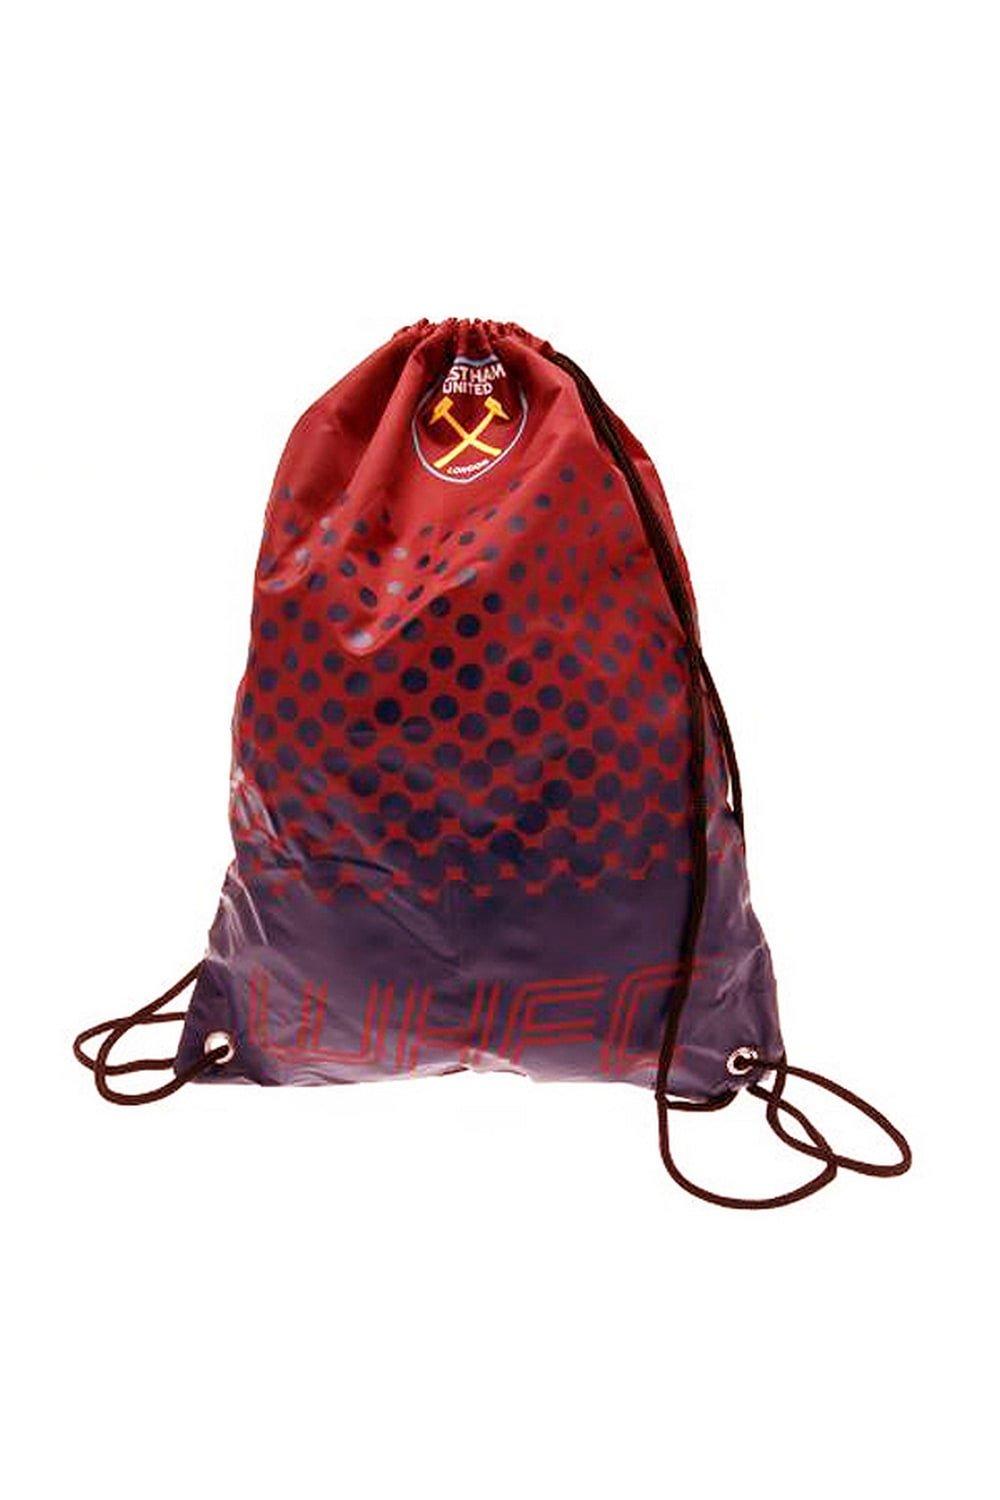 Официальная спортивная сумка West Ham FC Fade Football Crest со шнурком для спортзала West Ham United FC, красный роскошные перчатки для сенсорного экрана west ham united fc серый